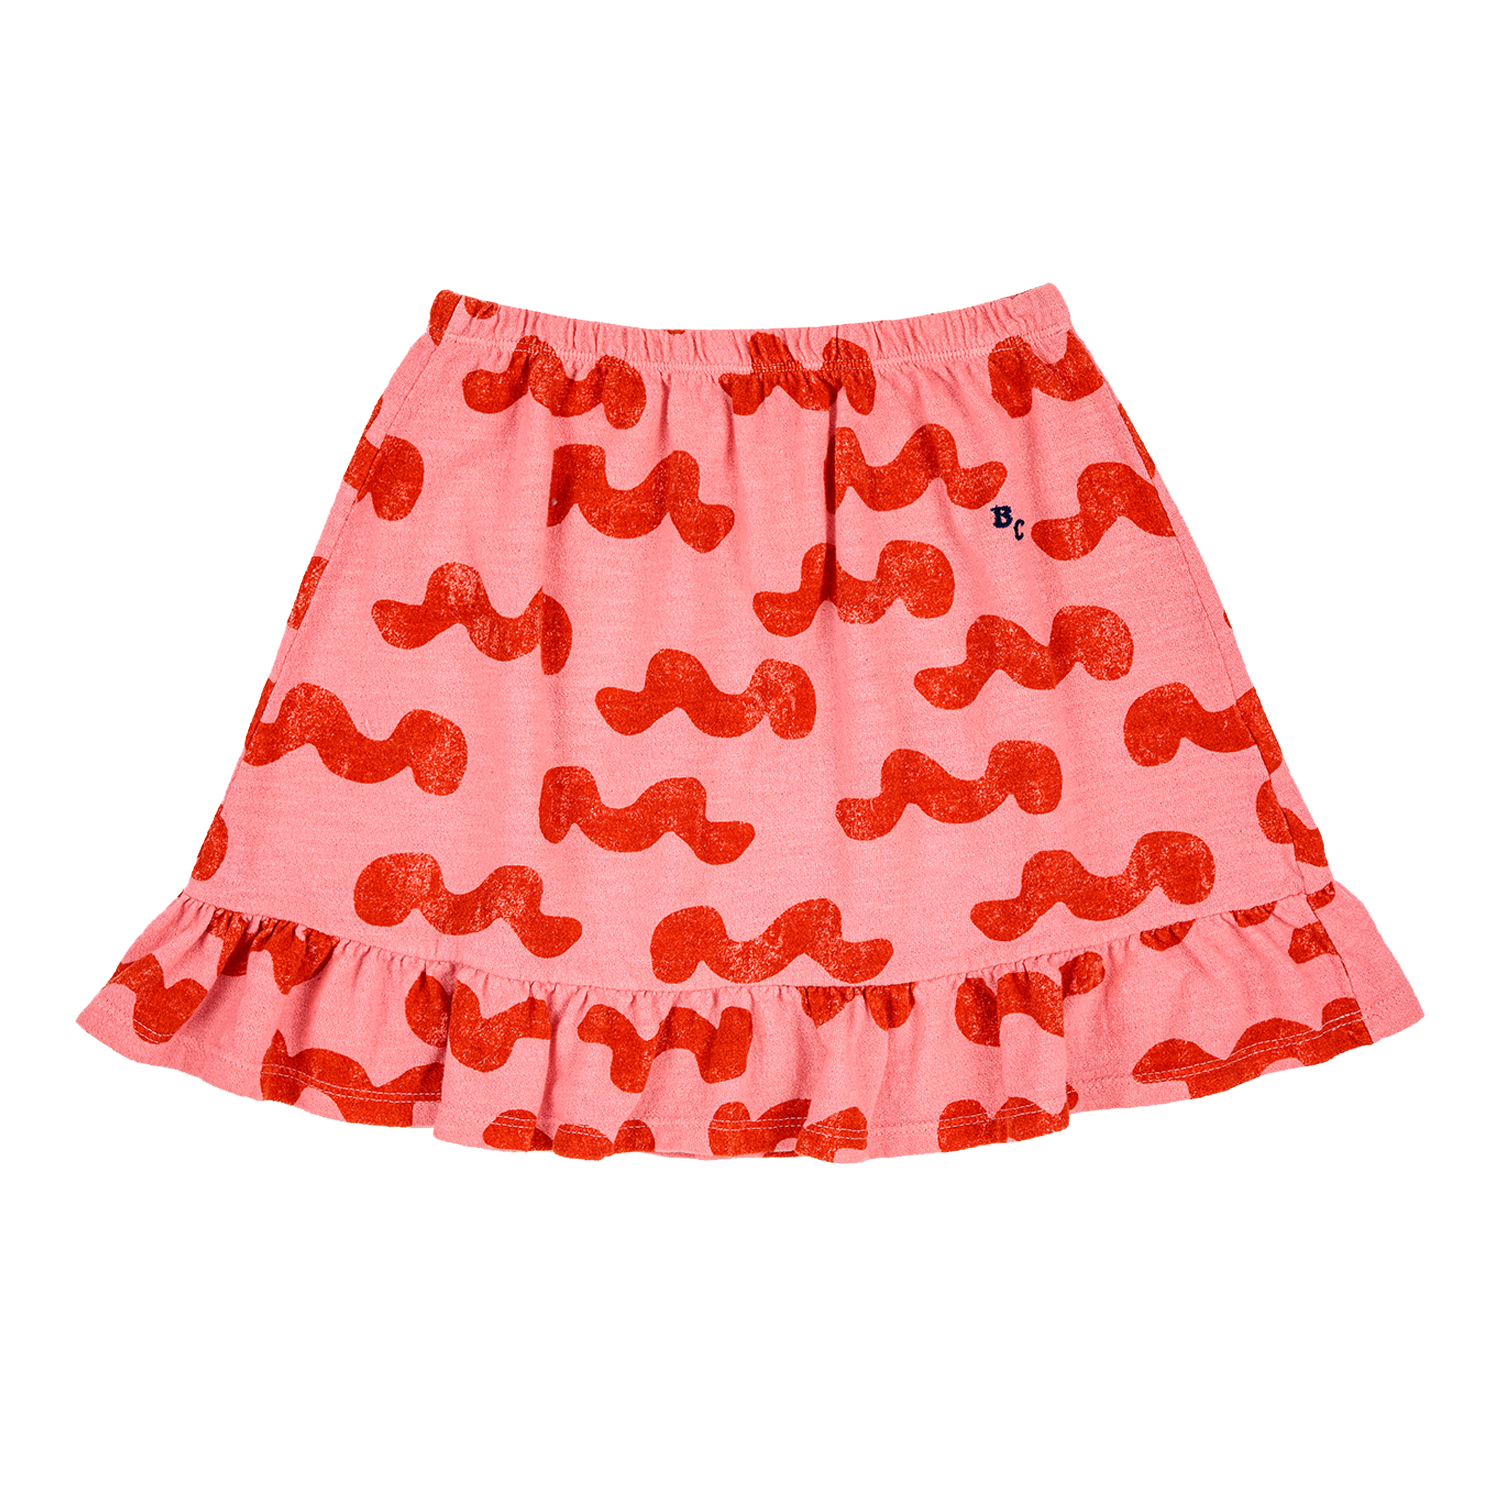 Bobo Choses Waves Skirt - Orange Waves